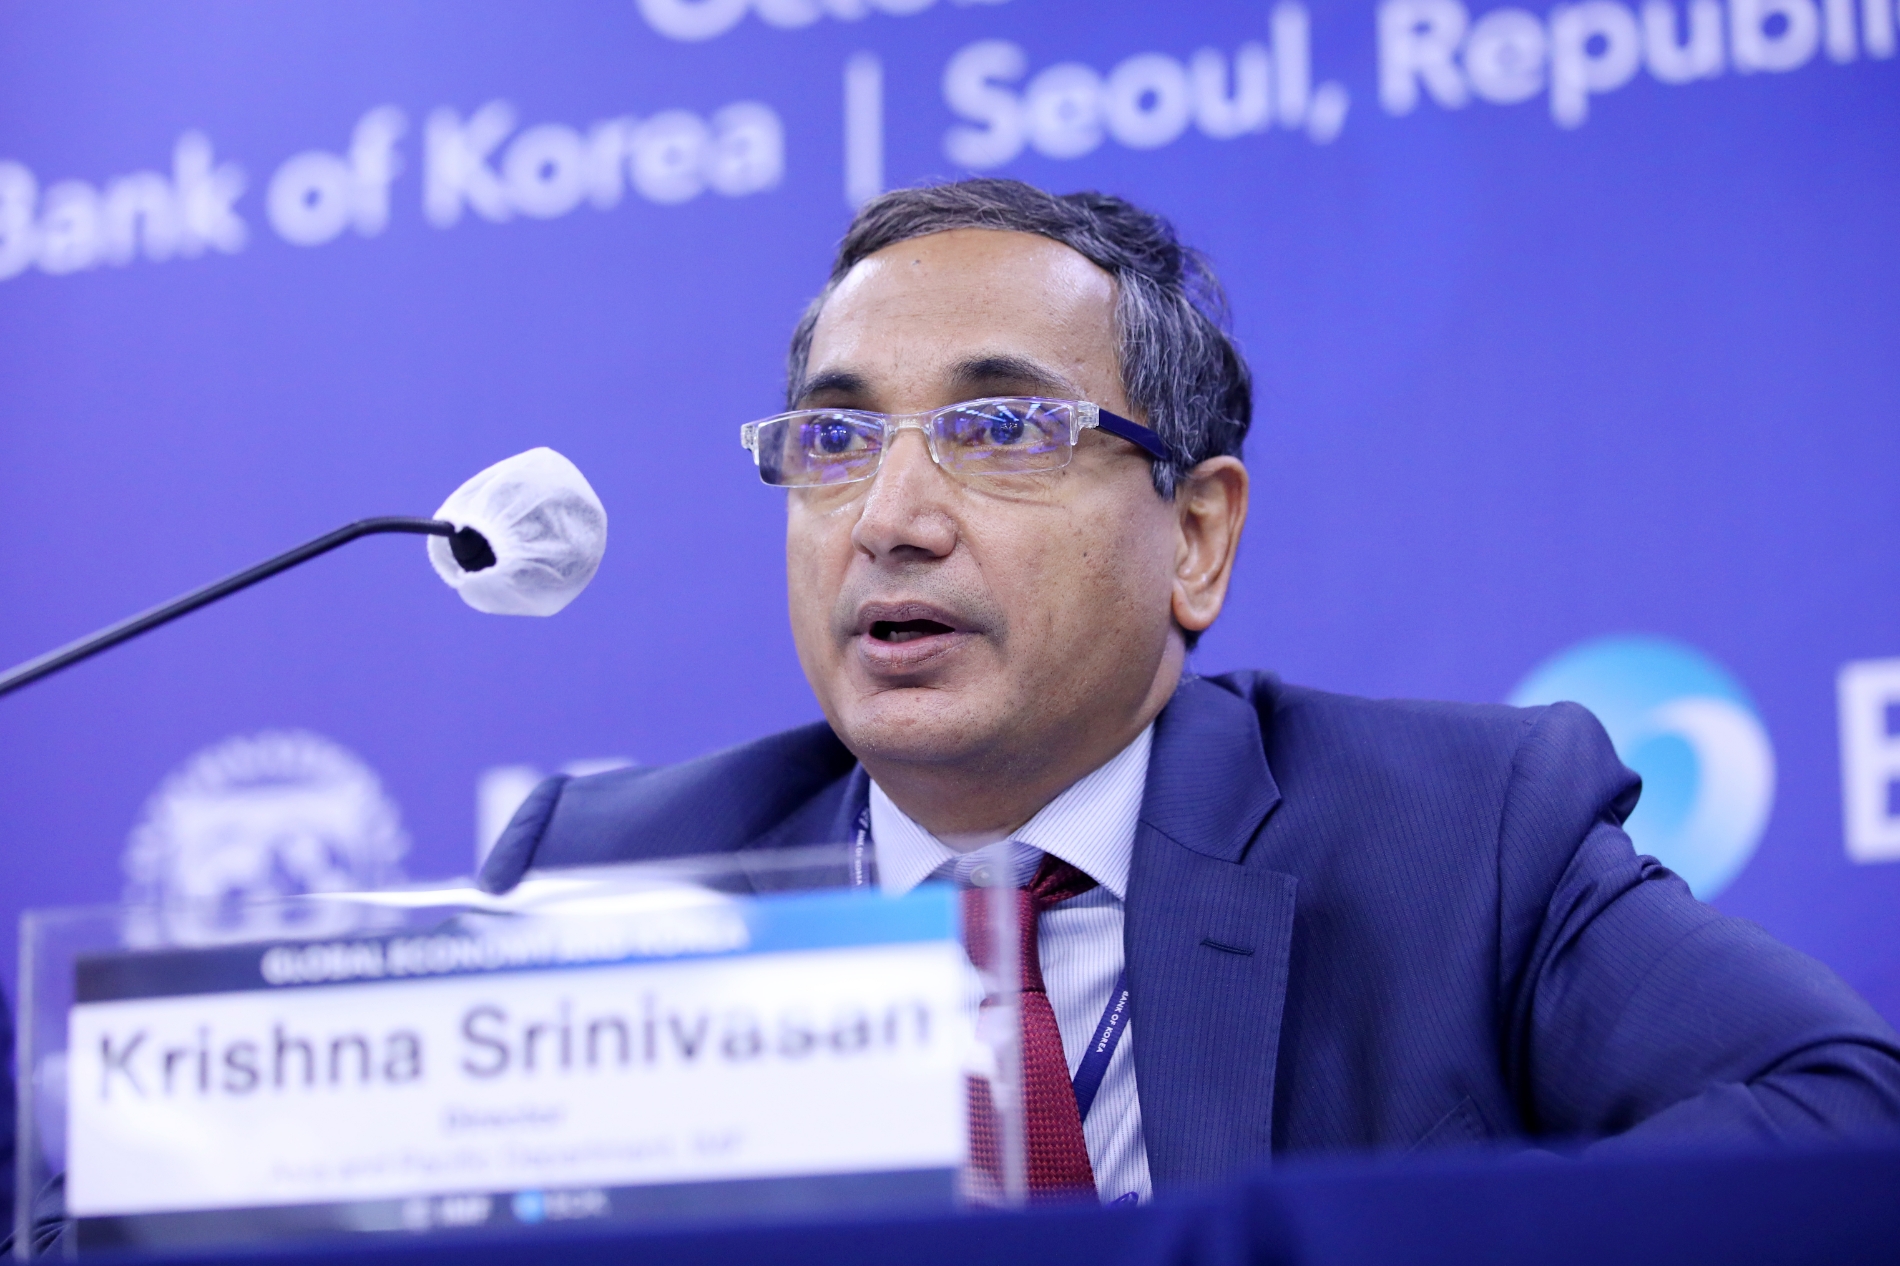 크리슈나 스리니바산(Krishna Srinivasan) IMF 아태국장이 25일 서울 중구 한국은행에서 열린 기자간담회에서 발언하고 있다. / 사진제공= 한국은행(2022.10.25)